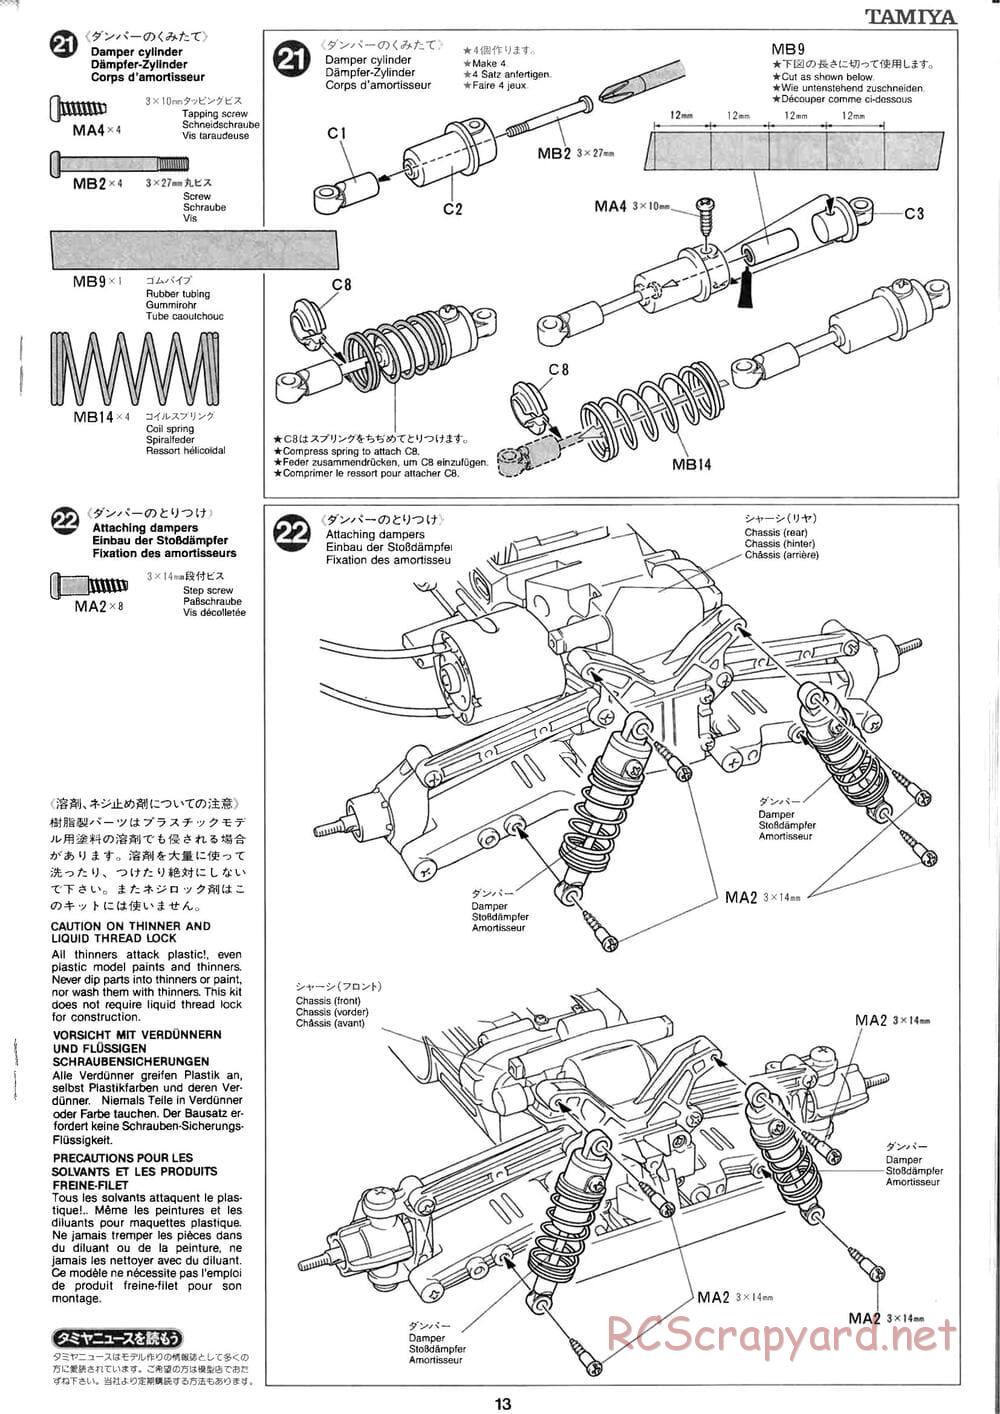 Tamiya - Baja Champ - TL-01B Chassis - Manual - Page 13